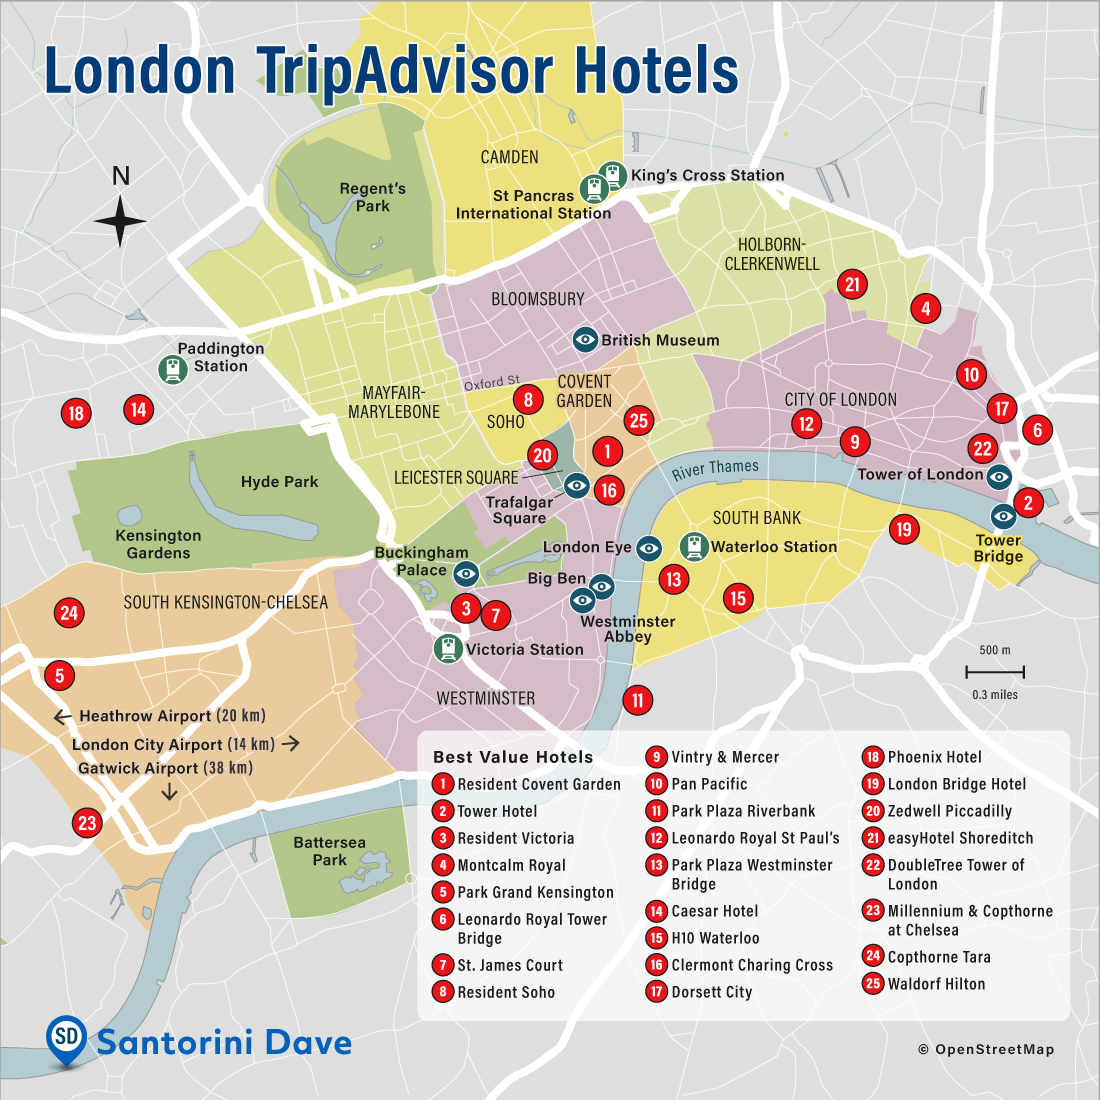 London TripAdvisor Hotels